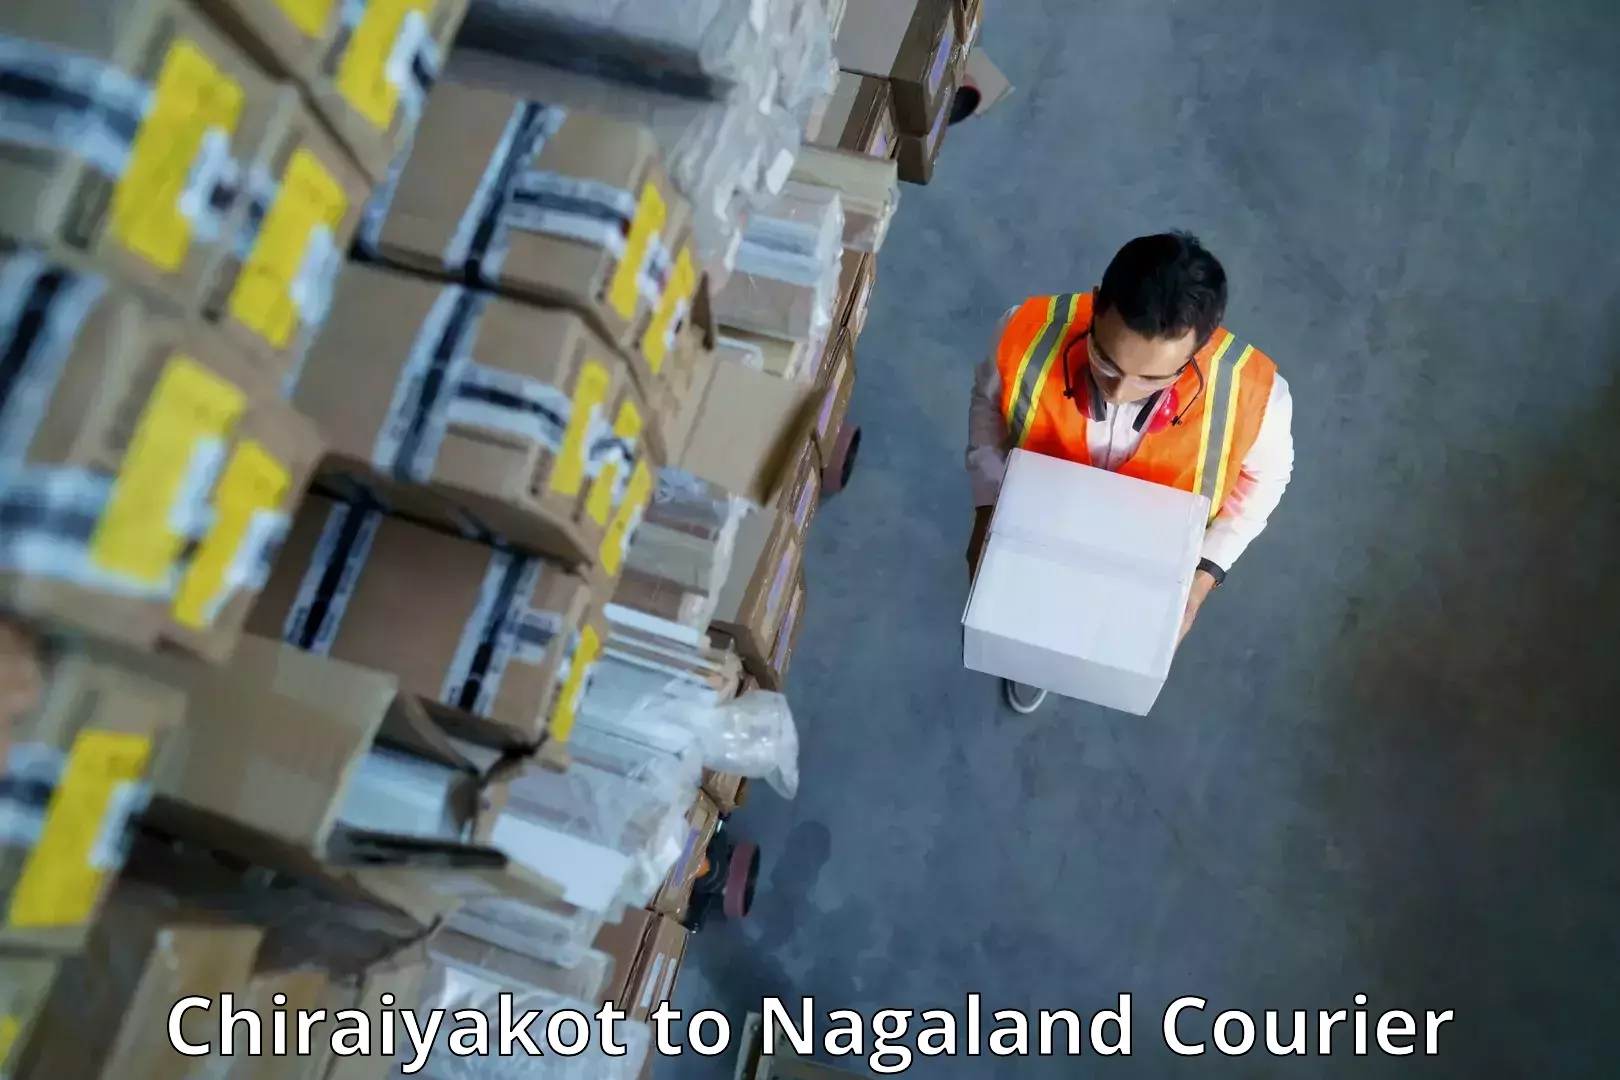 Cash on delivery service Chiraiyakot to Wokha